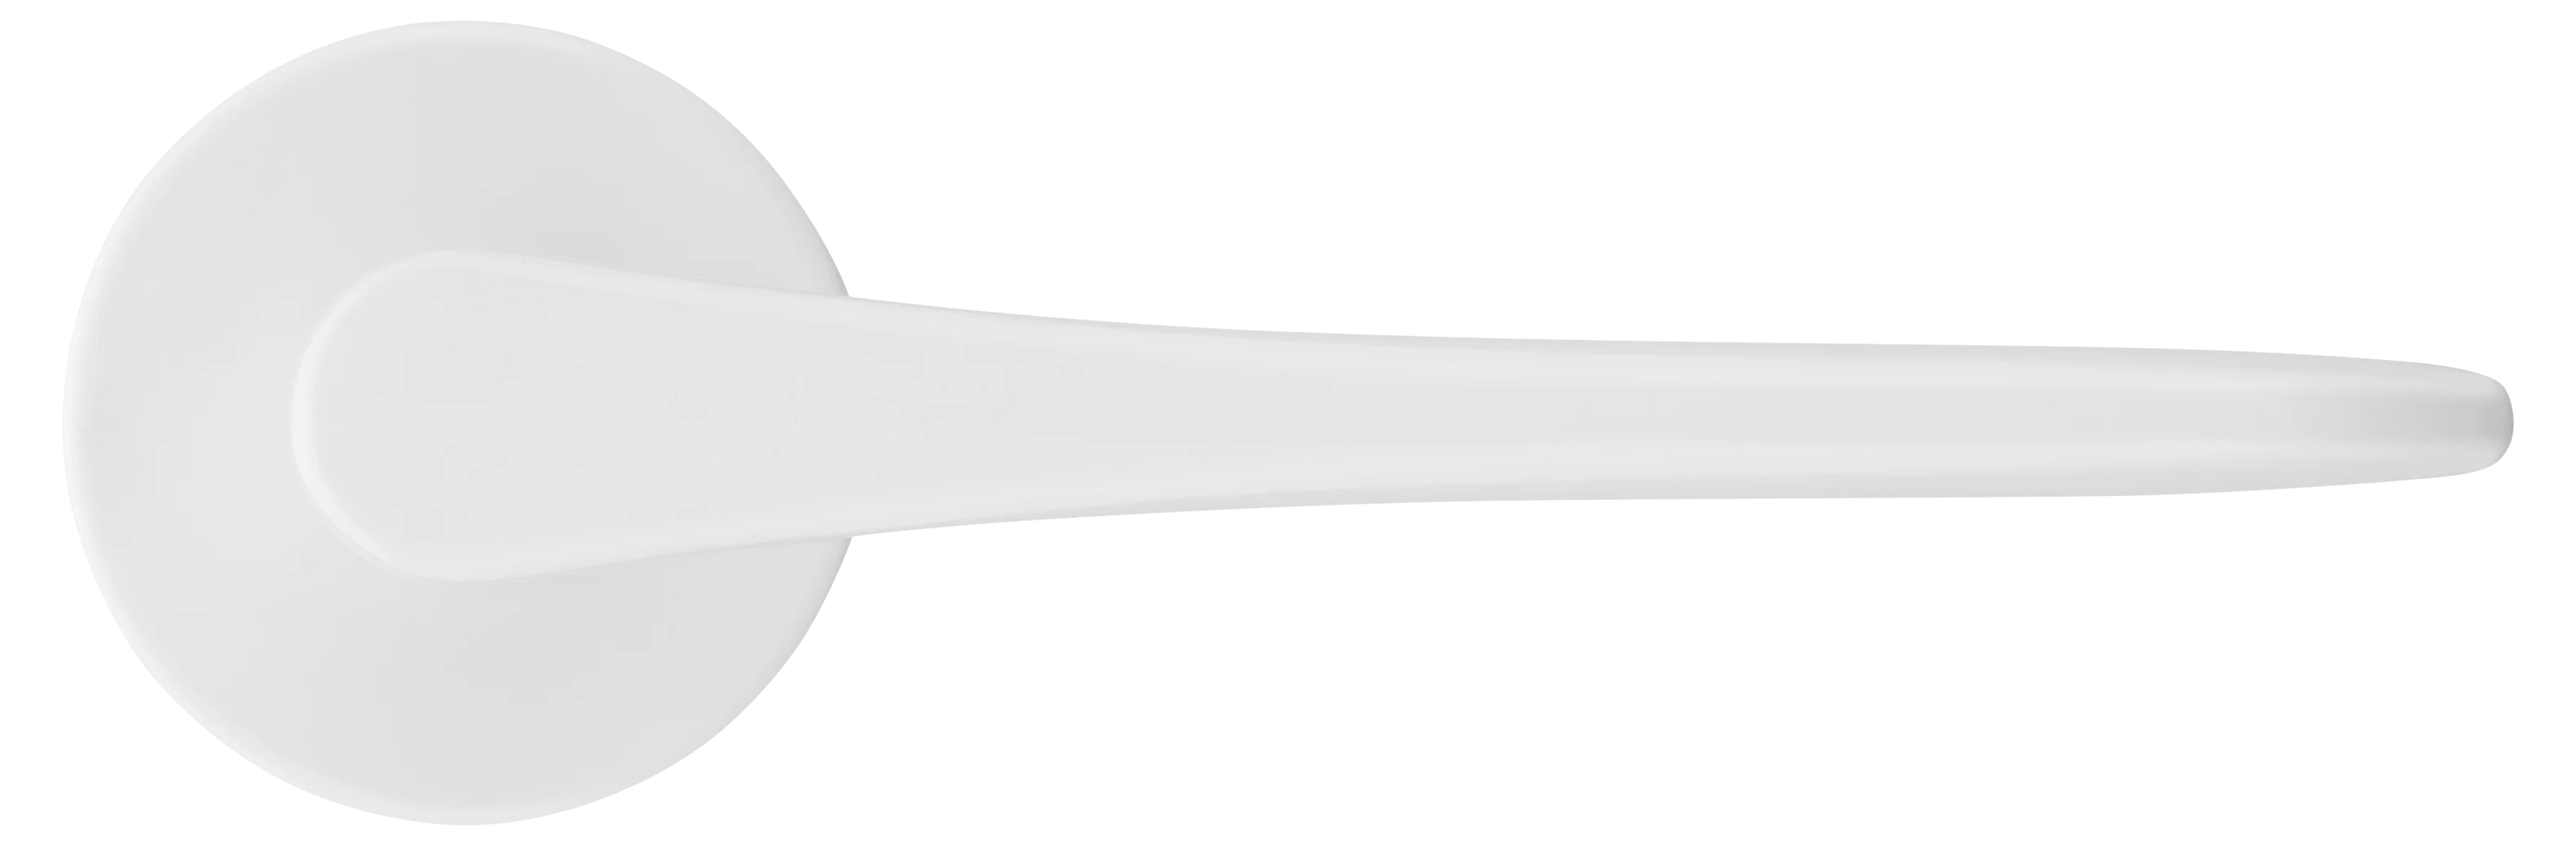 AULA R5 BIA, ручка дверная на розетке 7мм, цвет -  белый фото купить в Астане